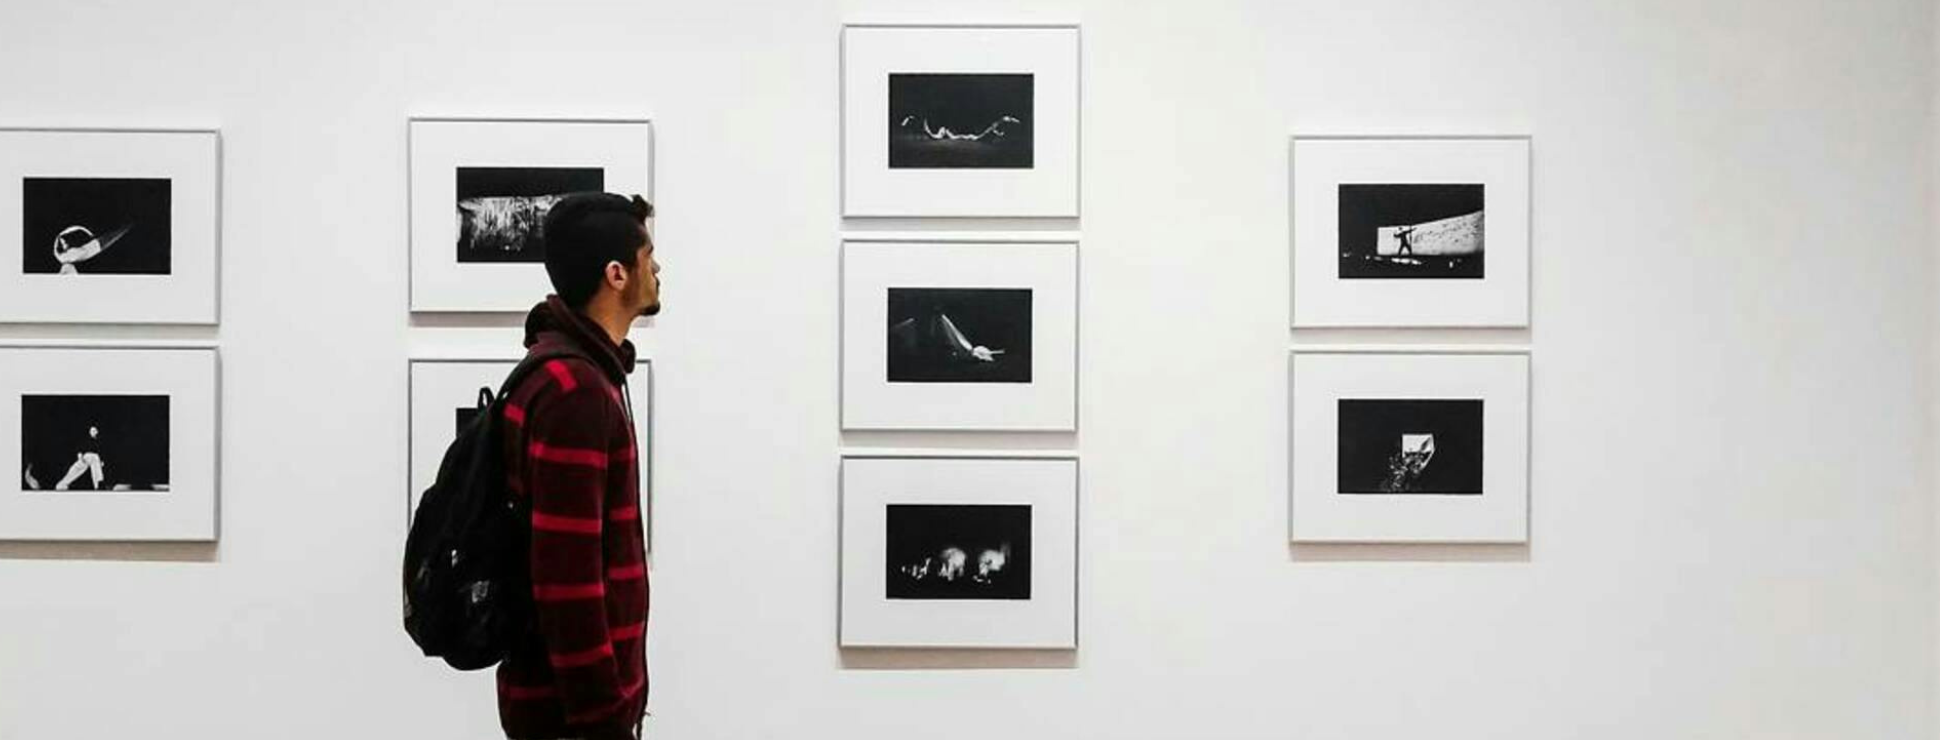 fotografia exposição galeria